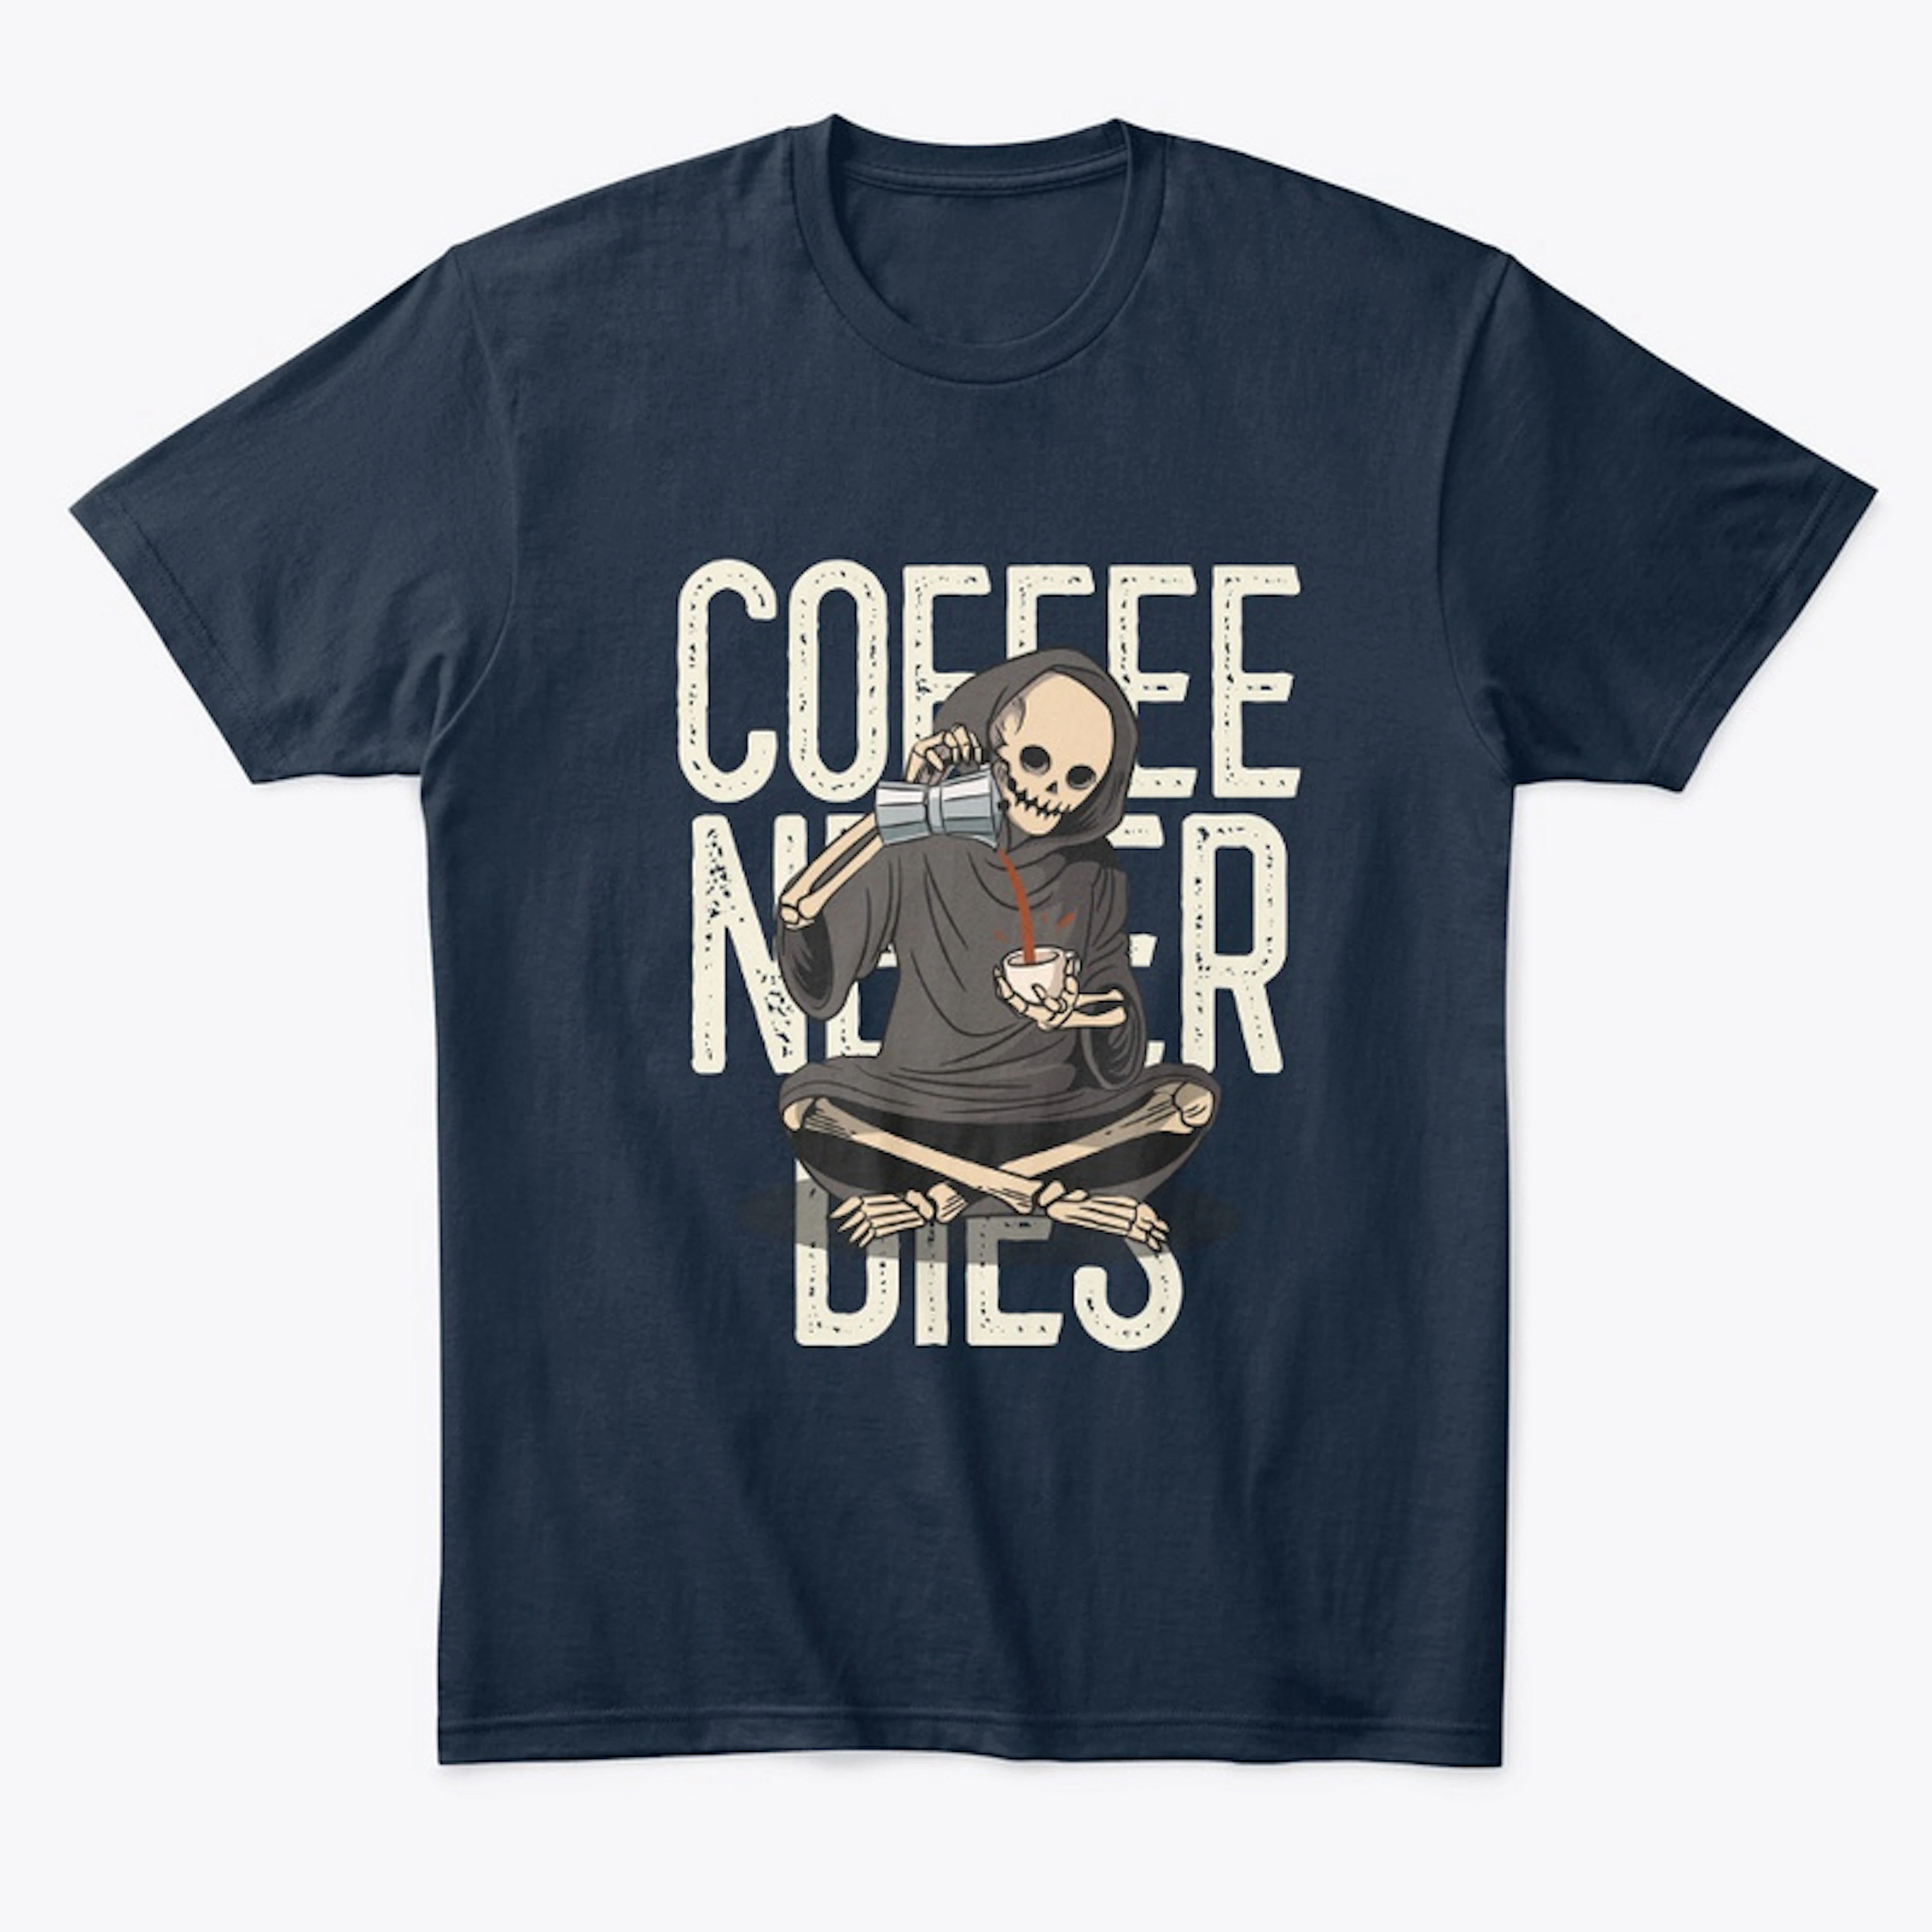 Coffee never dies